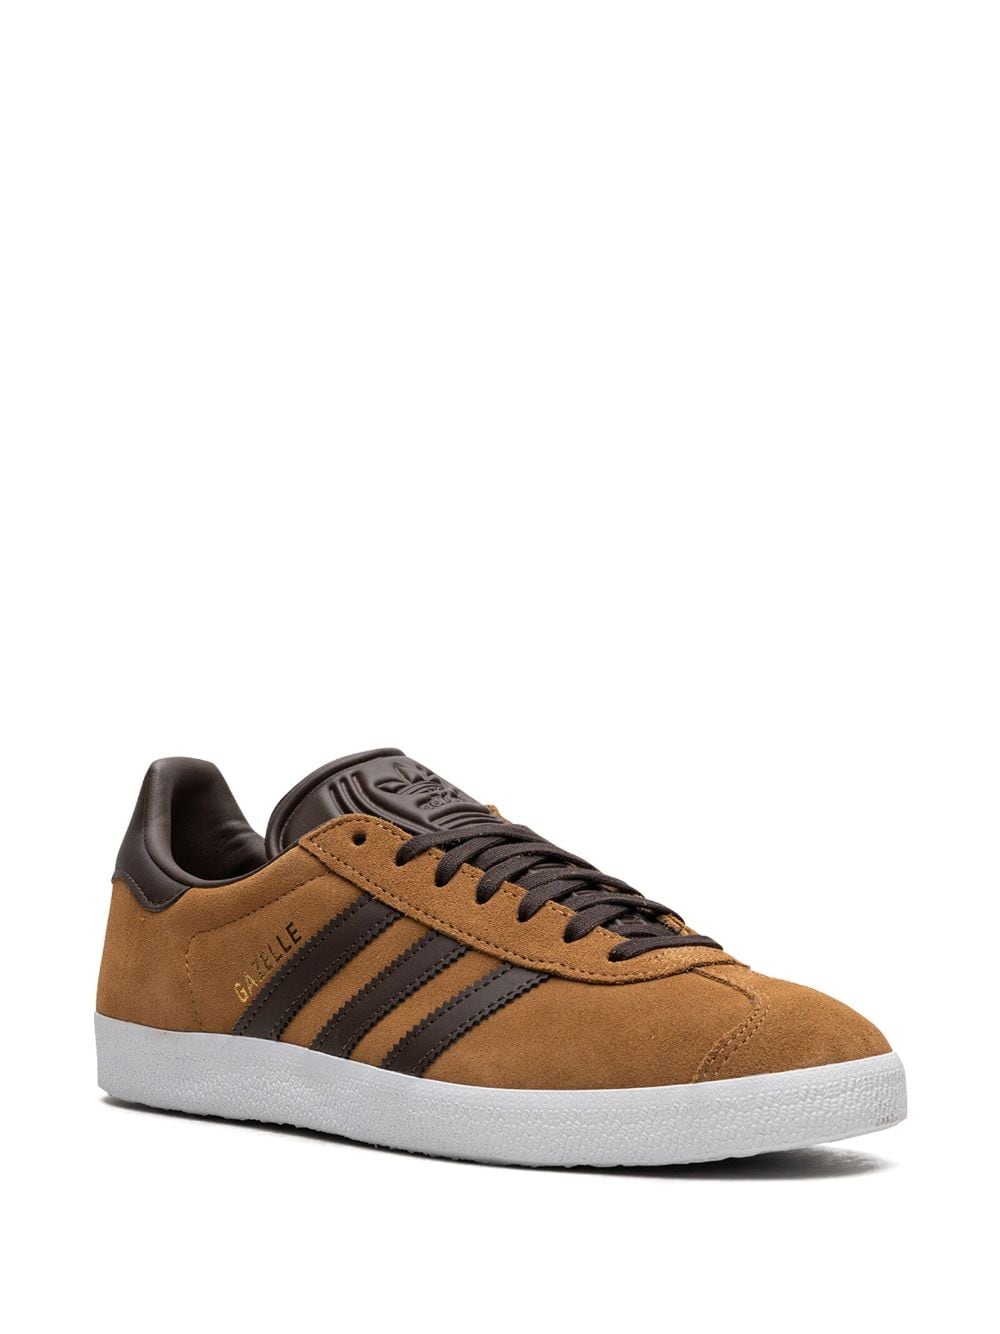 Shop Adidas Originals Gazelle "mesa/brown" Sneakers